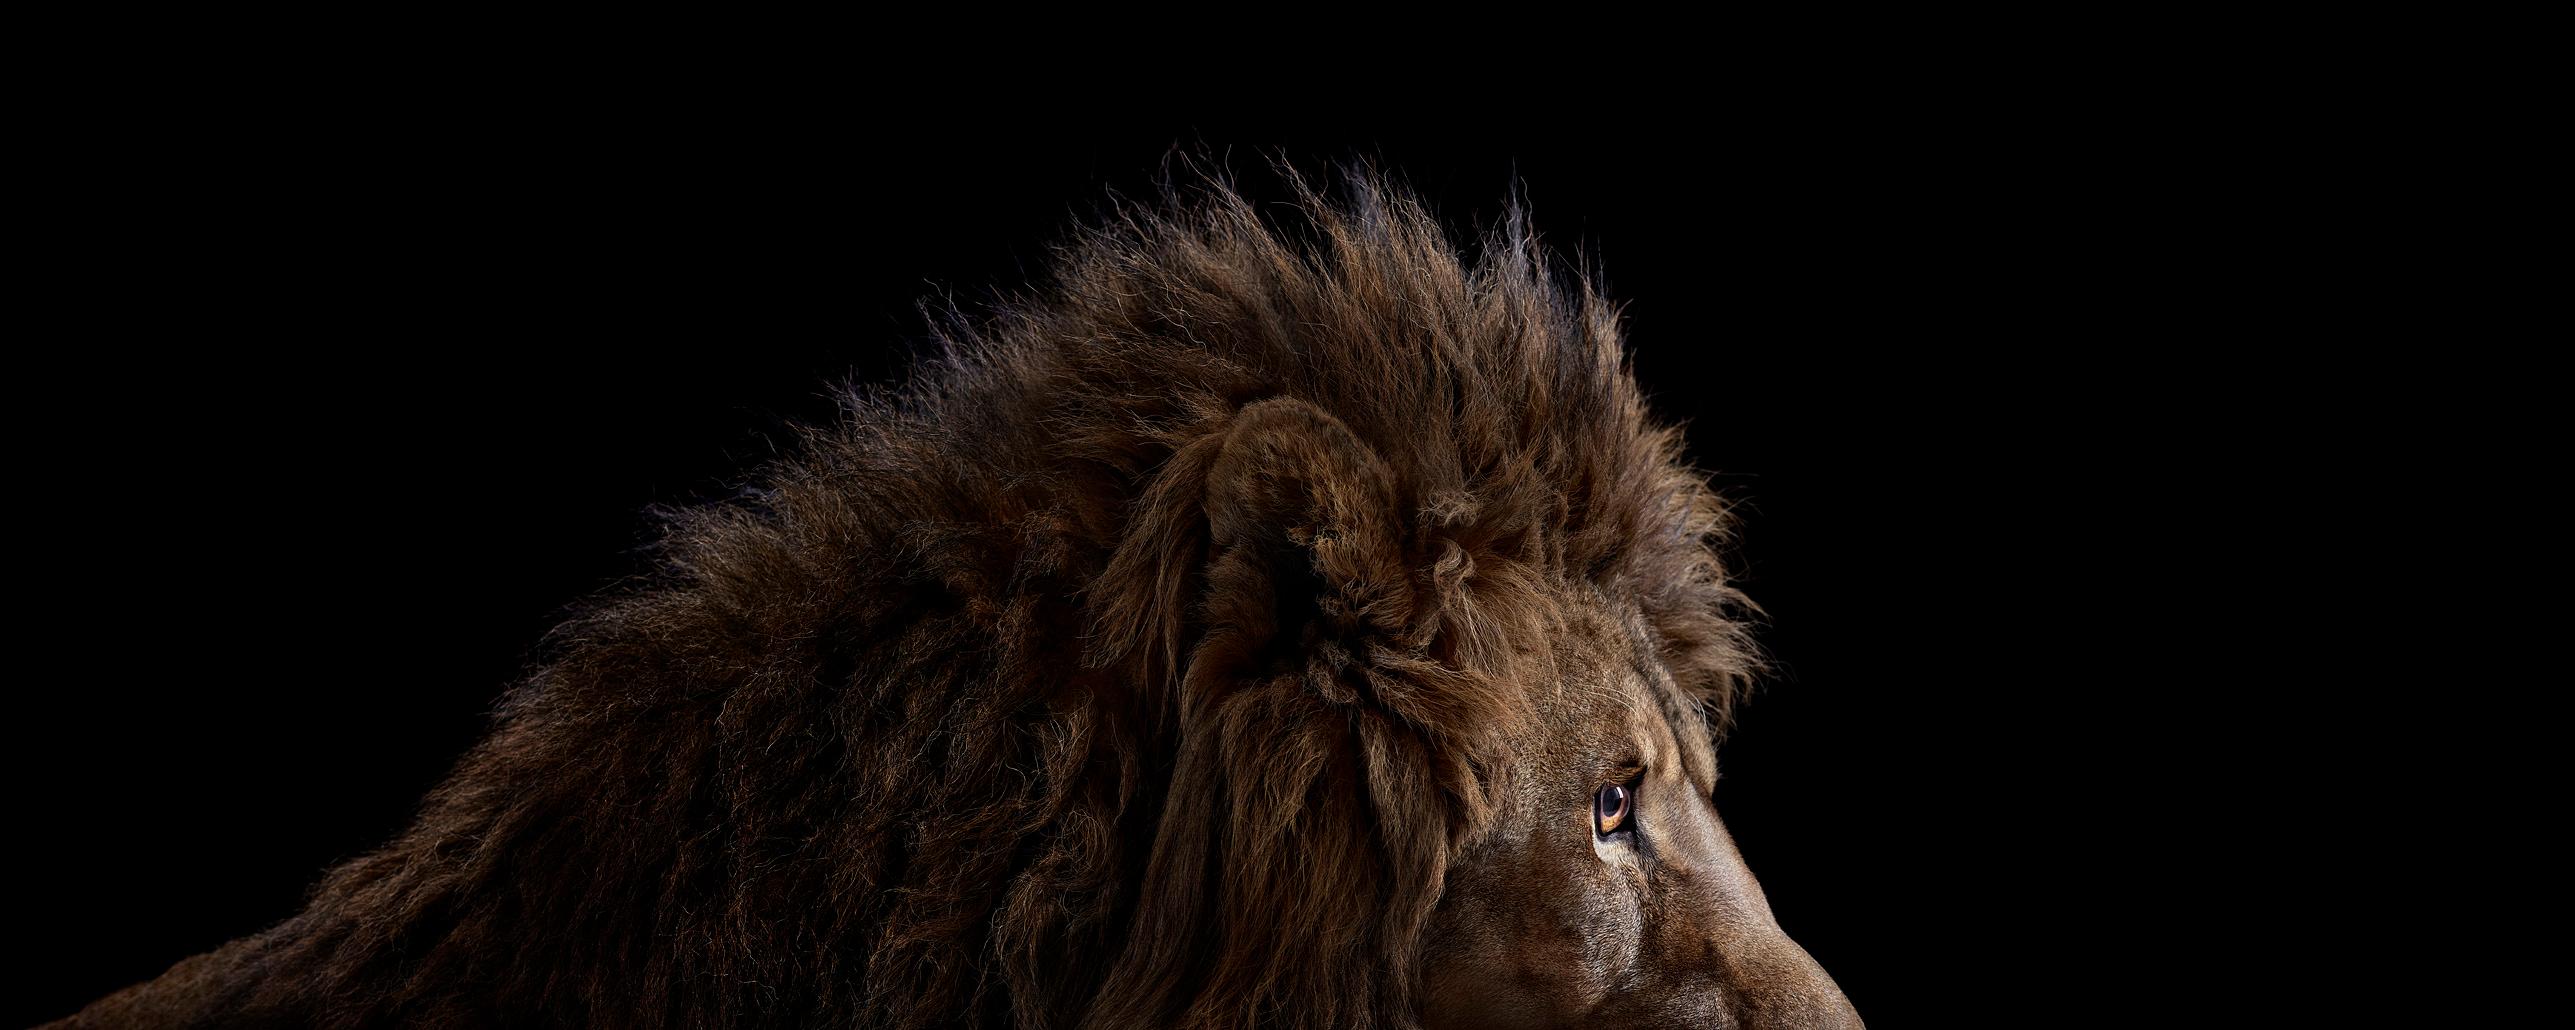 Brad Wilson Color Photograph - Lion #6